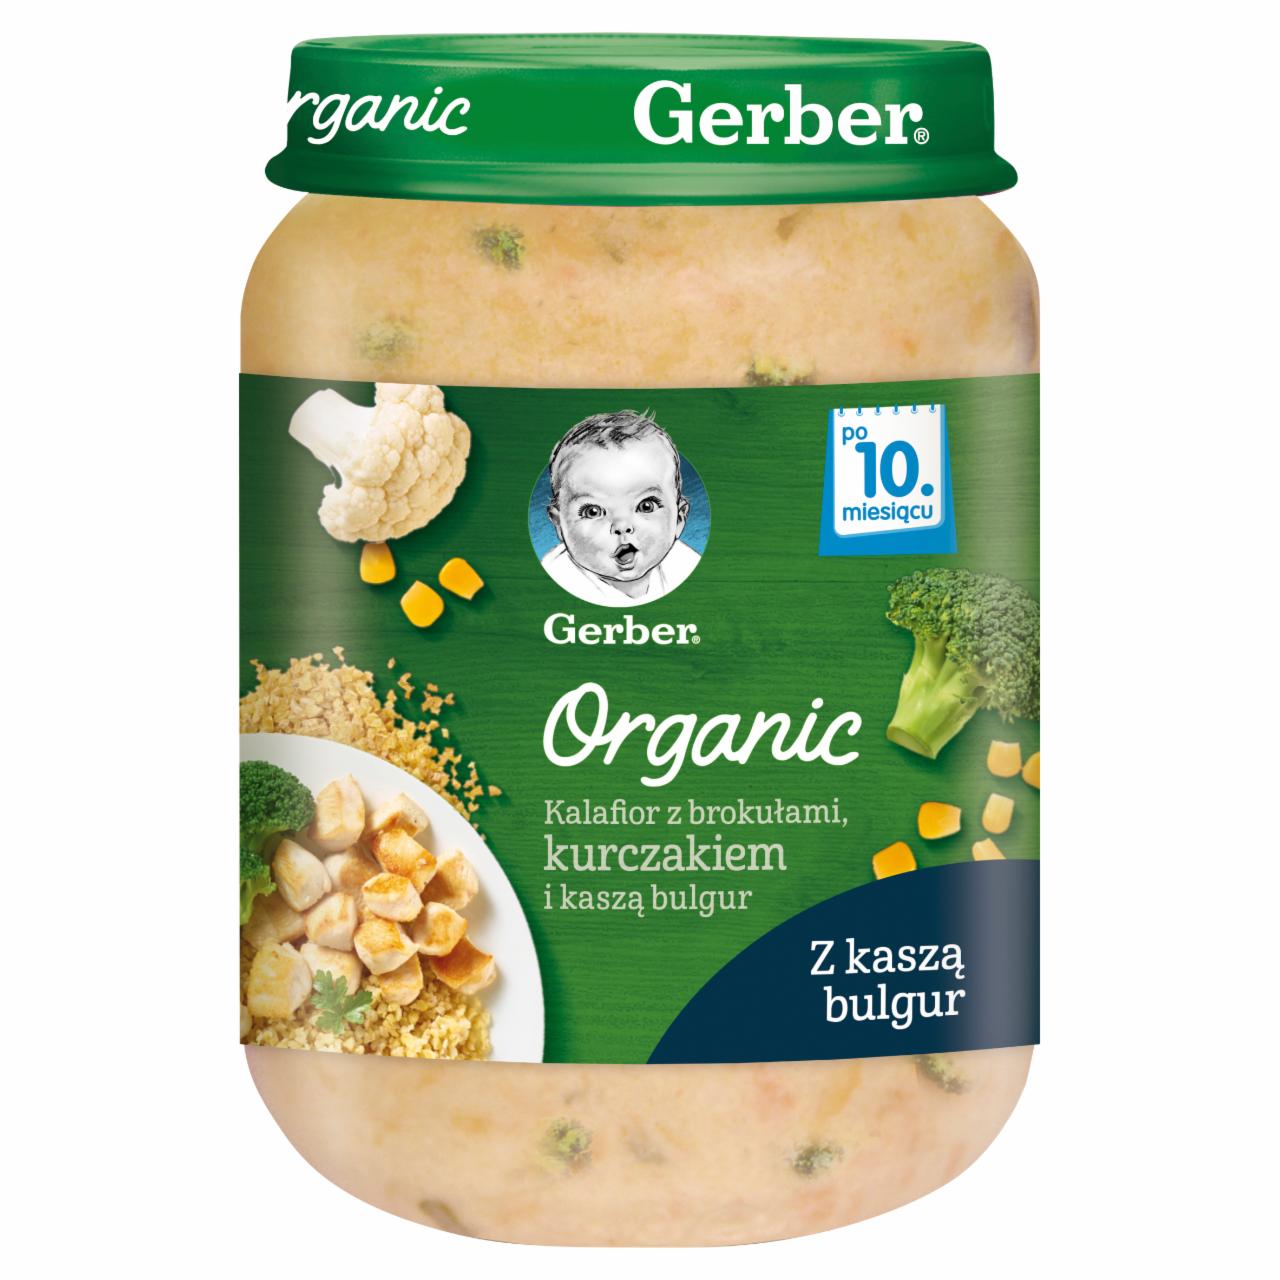 Zdjęcia - Gerber Organic Kalafior z brokułami kurczakiem i kaszą bulgur dla niemowląt po 10. miesiącu 190 g